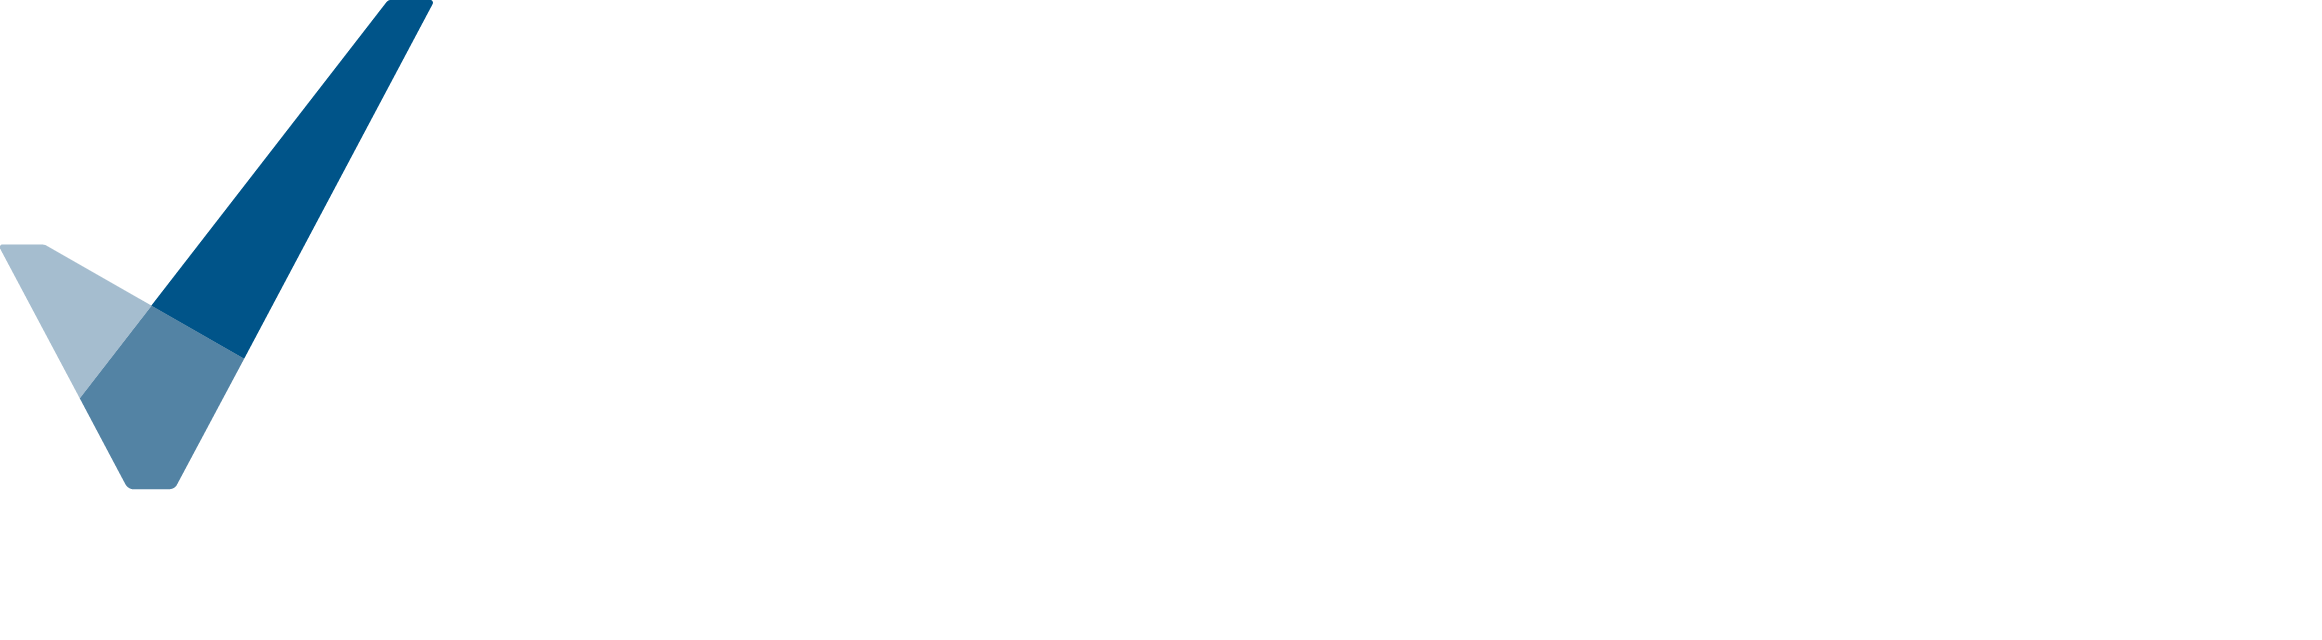 Dansk Håndværk - Vi gør os umage